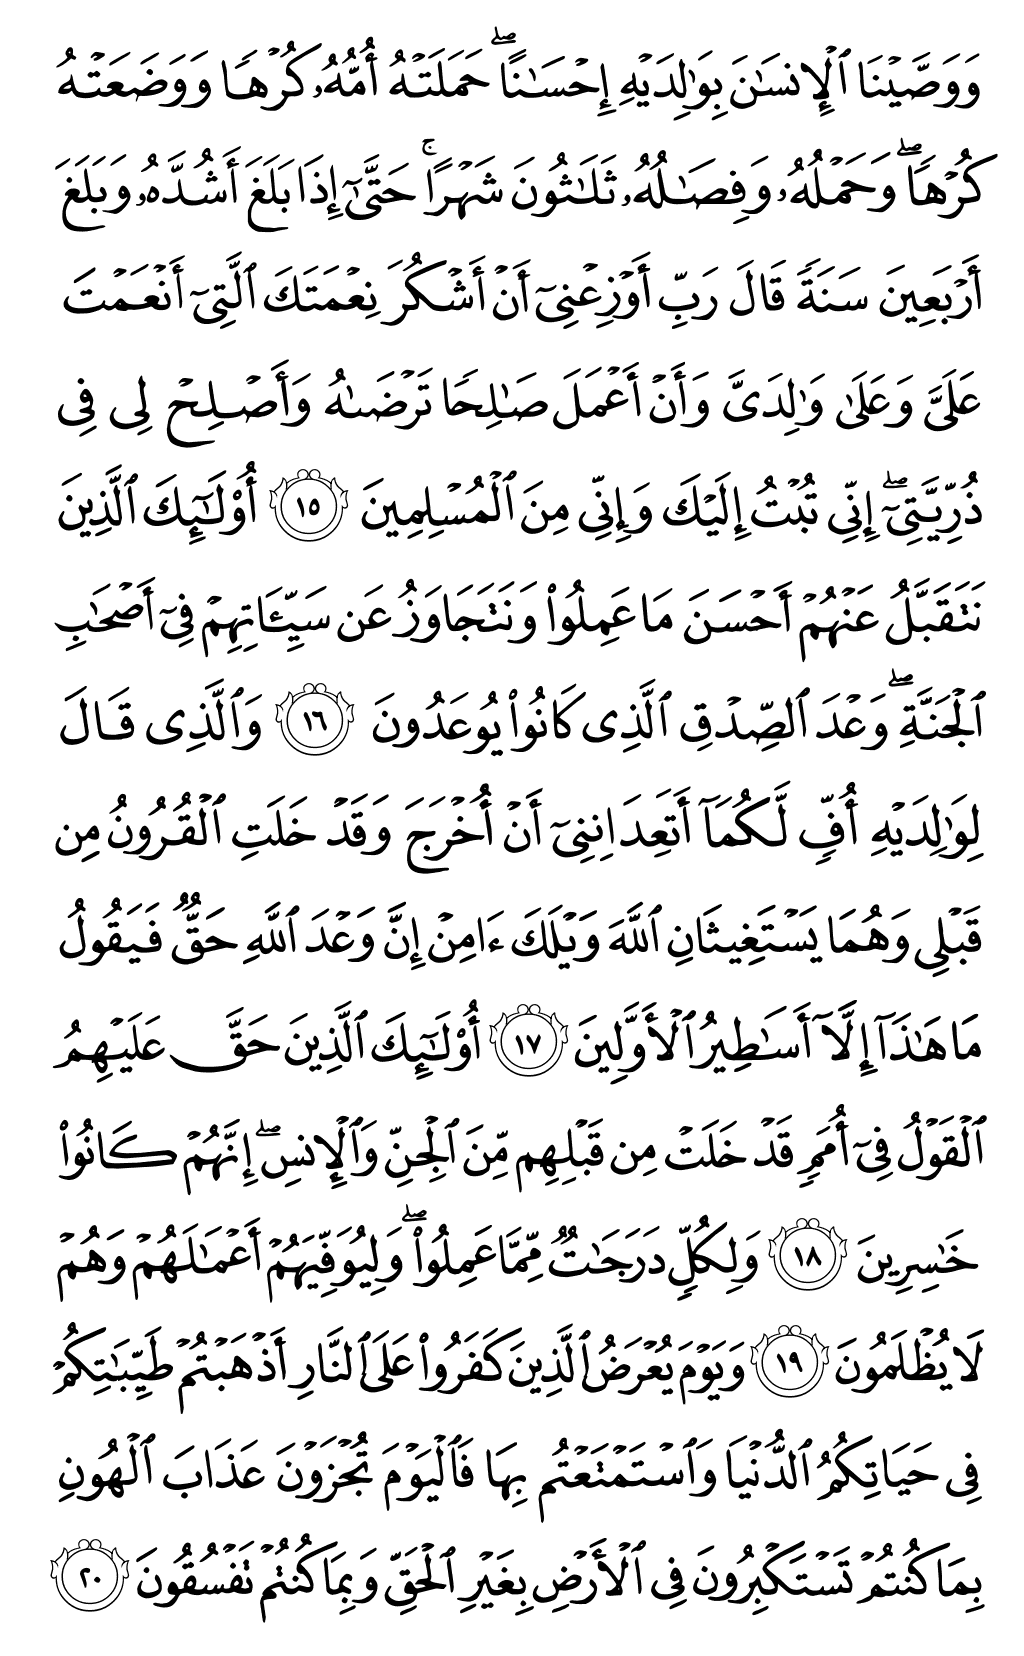 الصفحة رقم 504 من القرآن الكريم